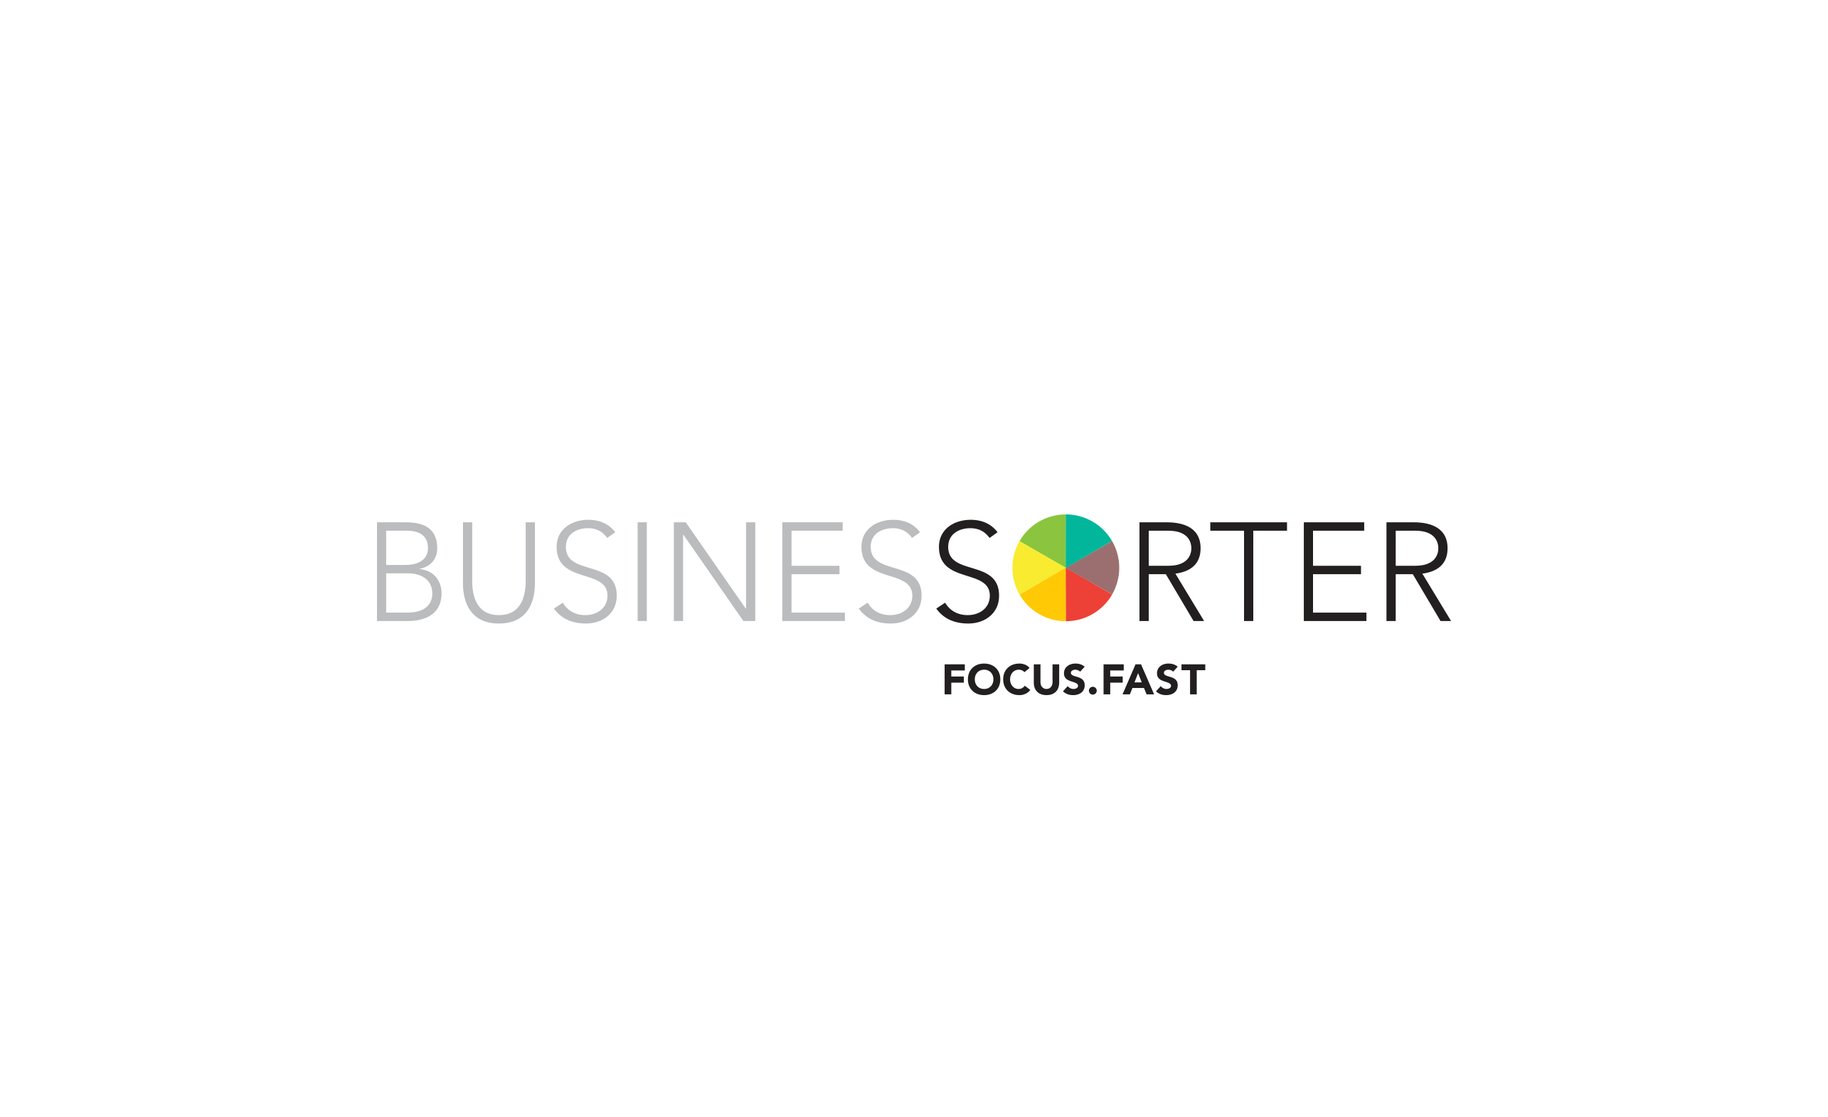 Business Sorter logo